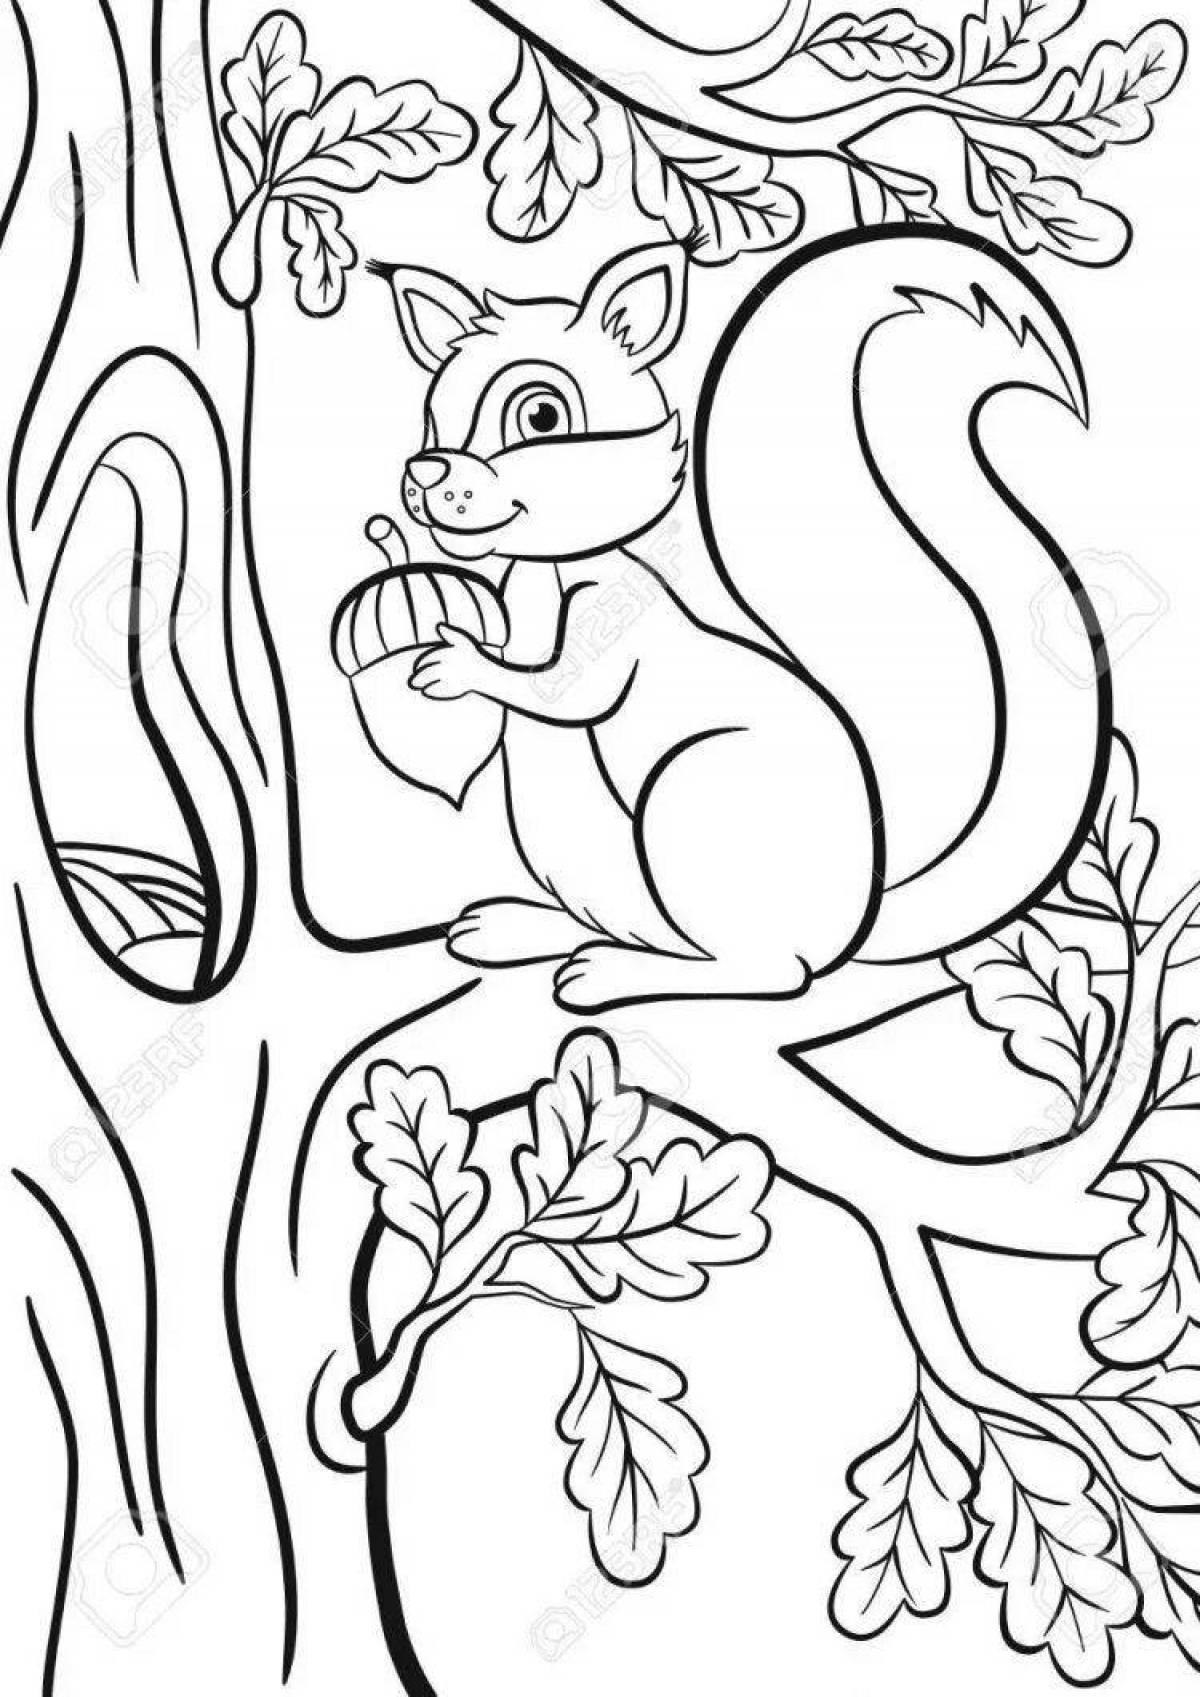 Coloring funny squirrel